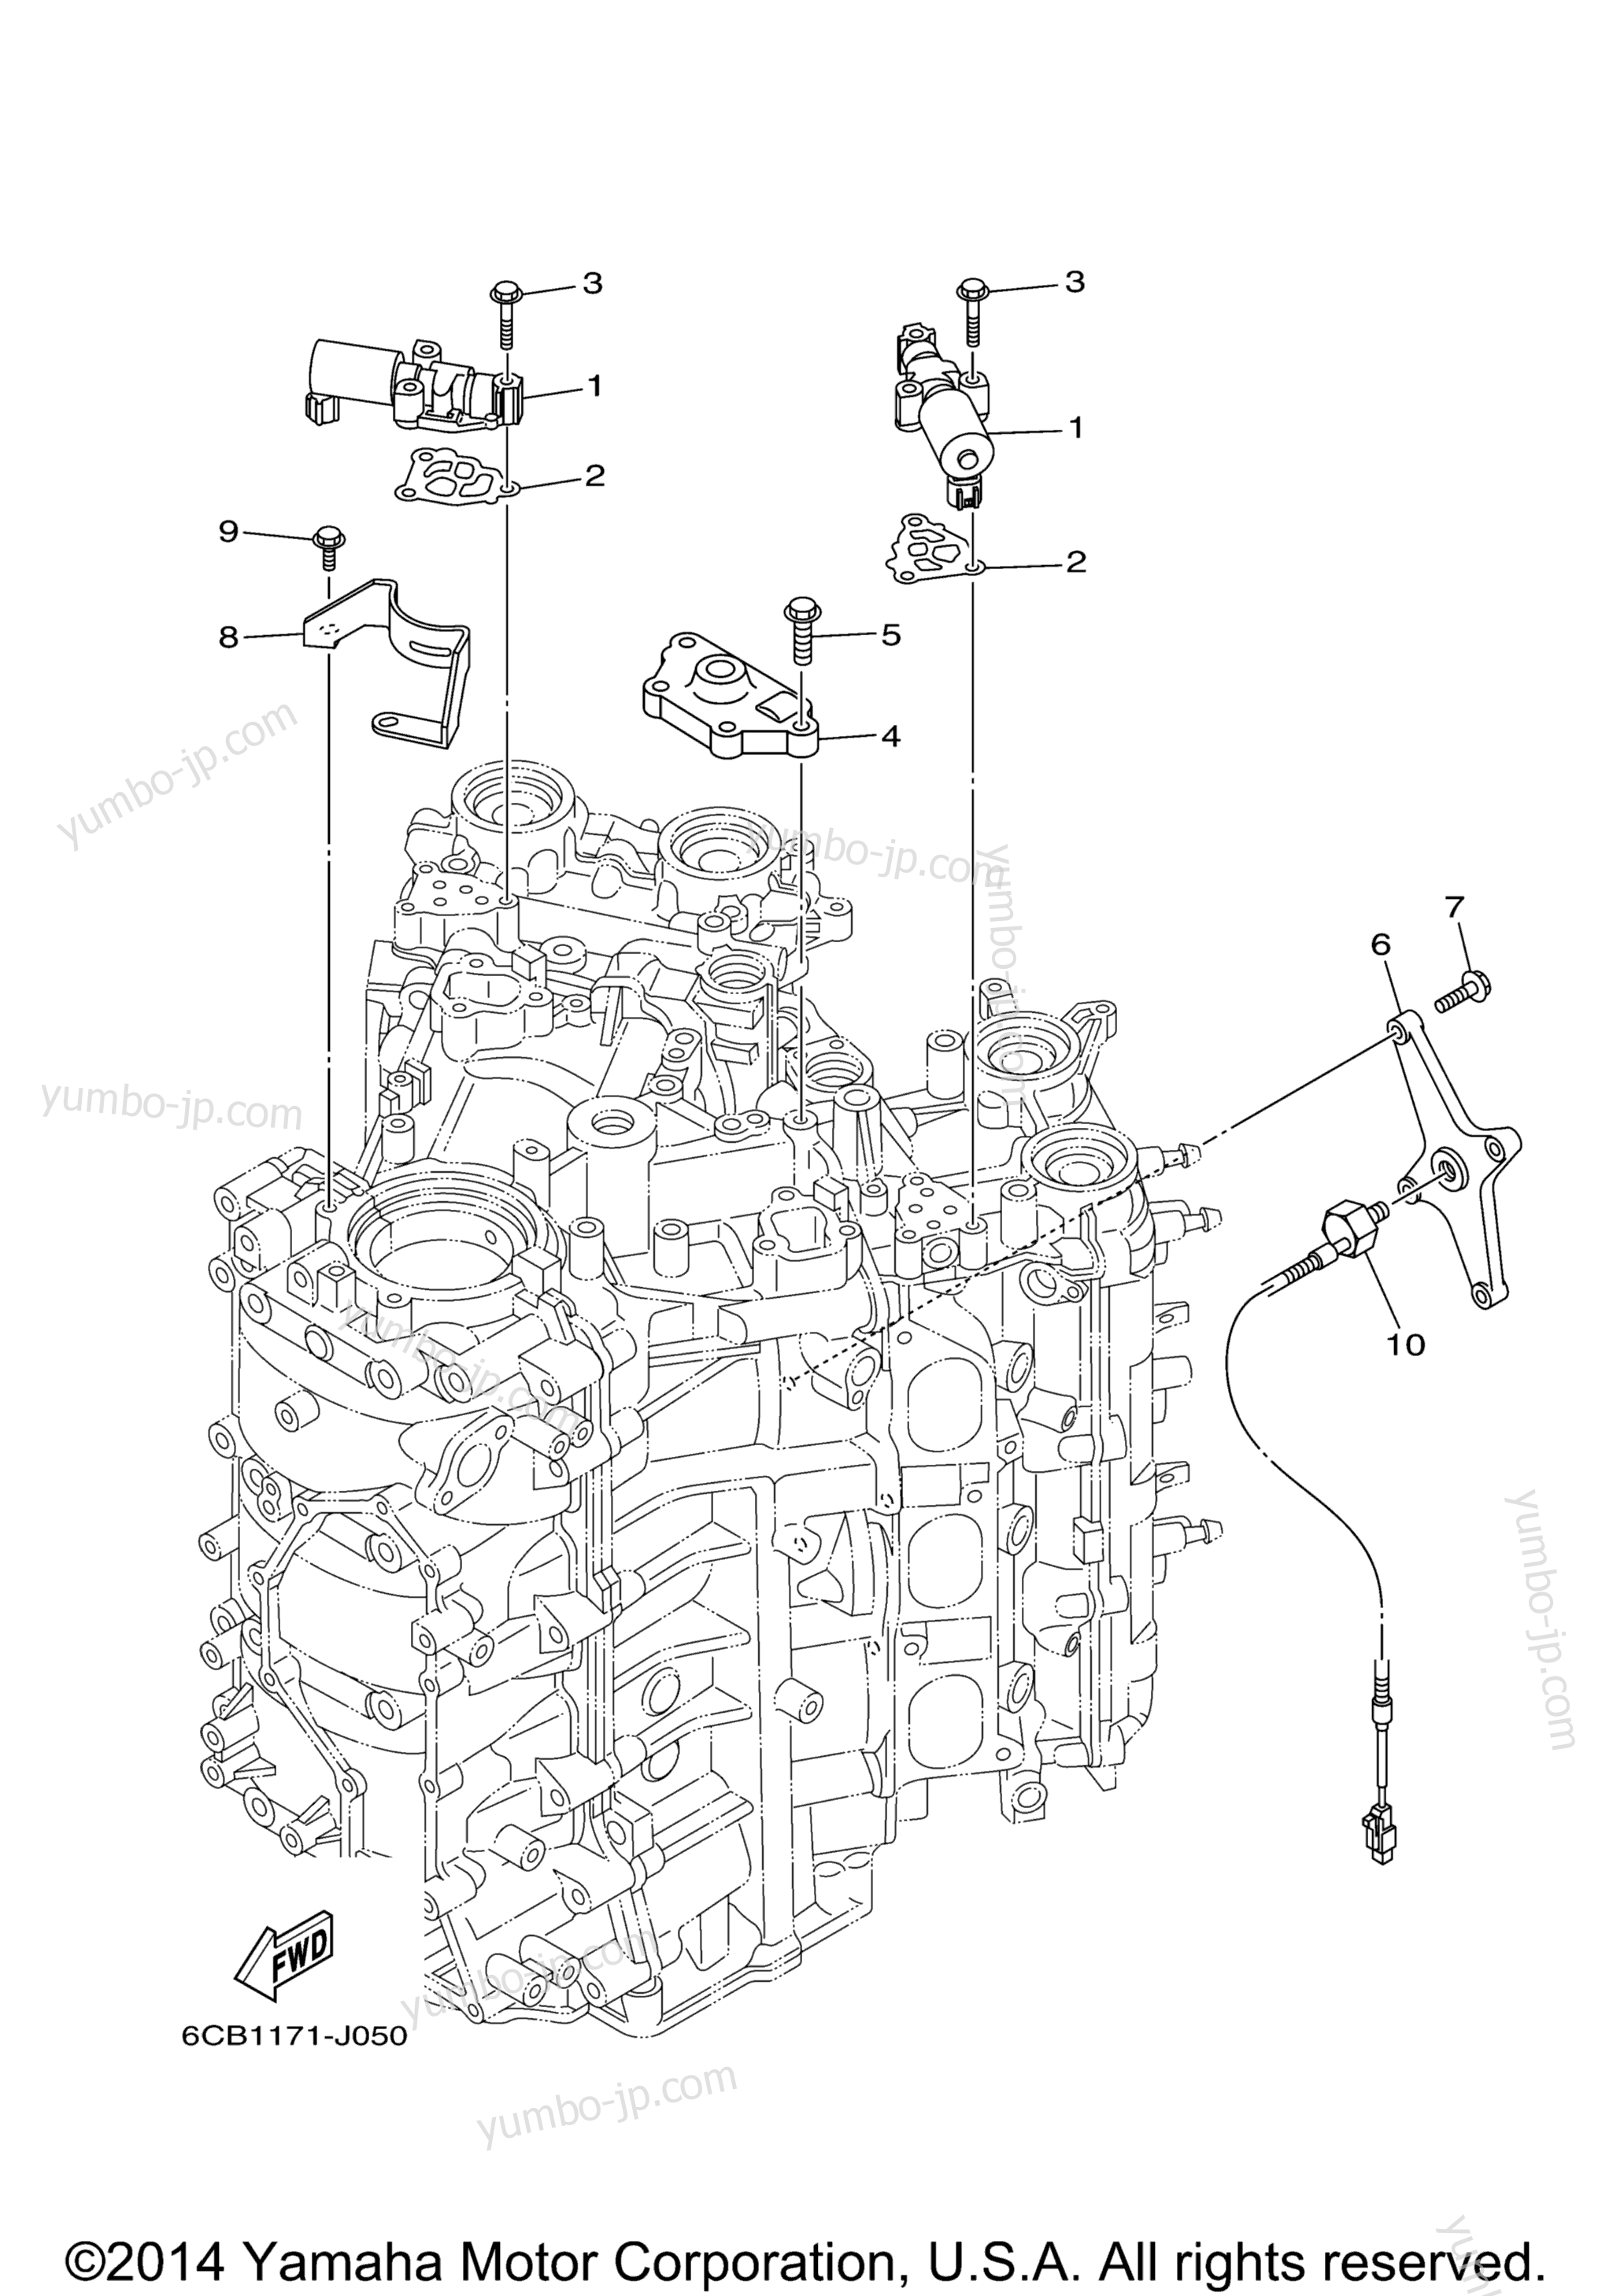 Cylinder Crankcase 3 для лодочных моторов YAMAHA F250UCA_04 (0411) 2006 г.